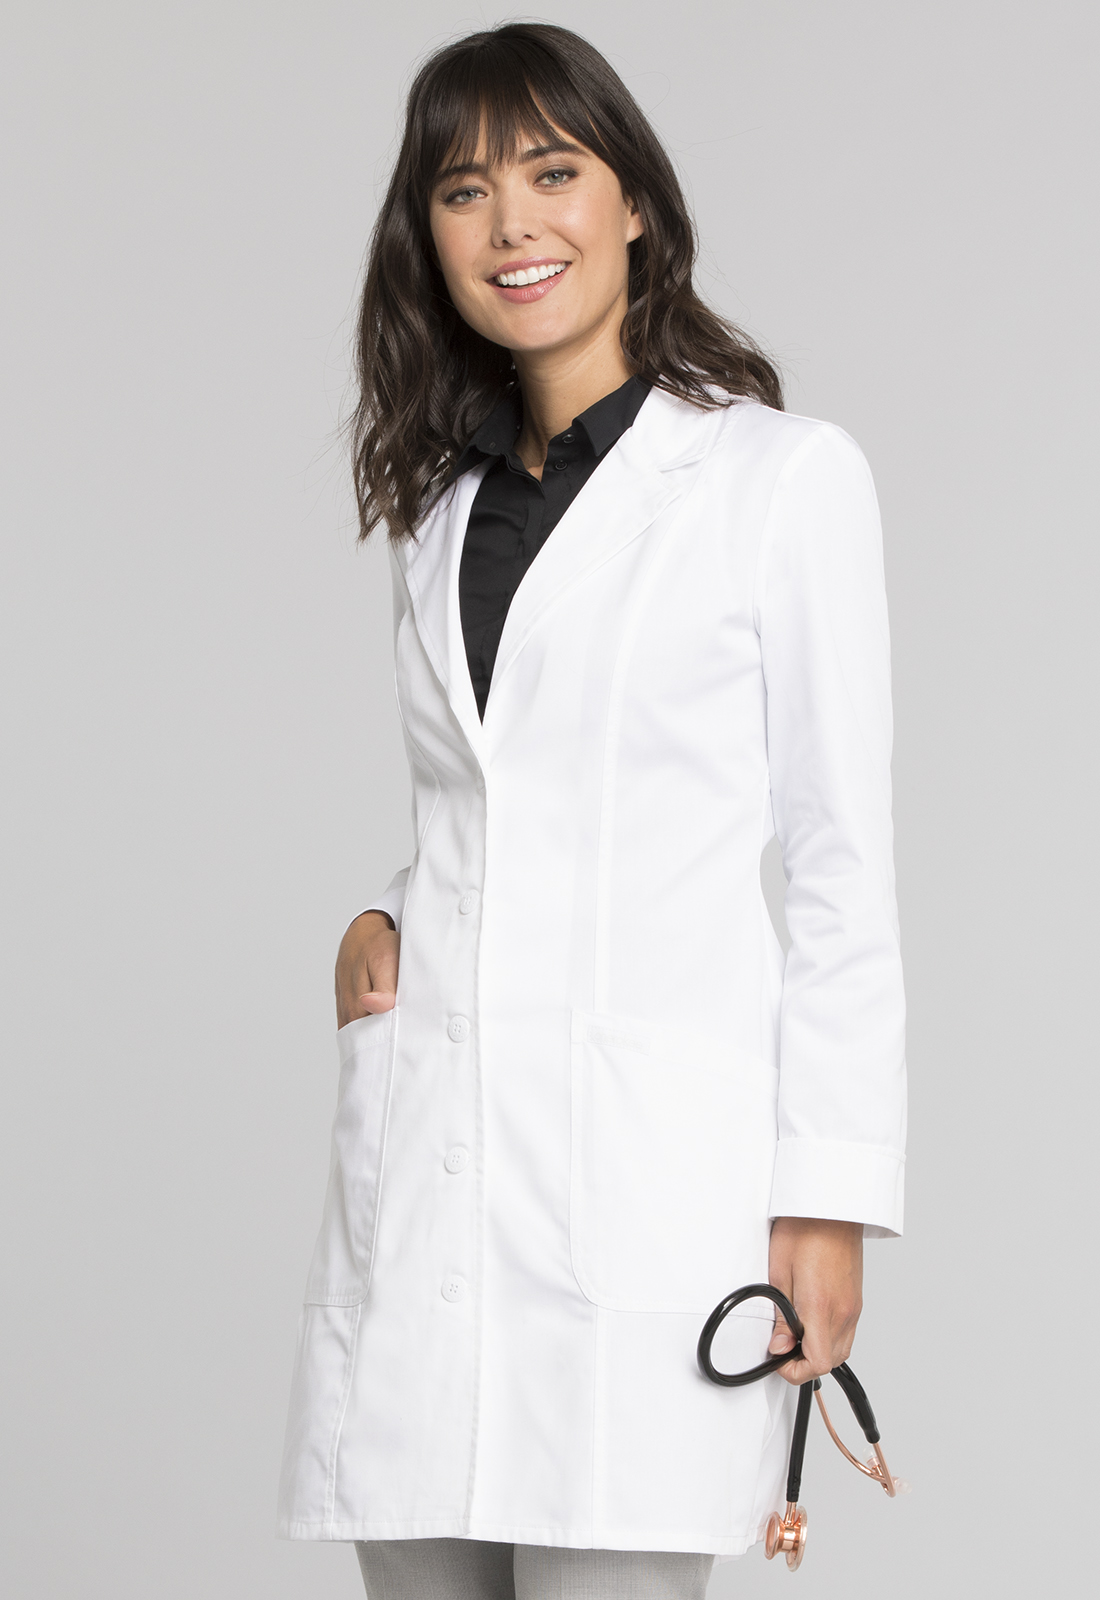 White lab coat #2410 Ladies 